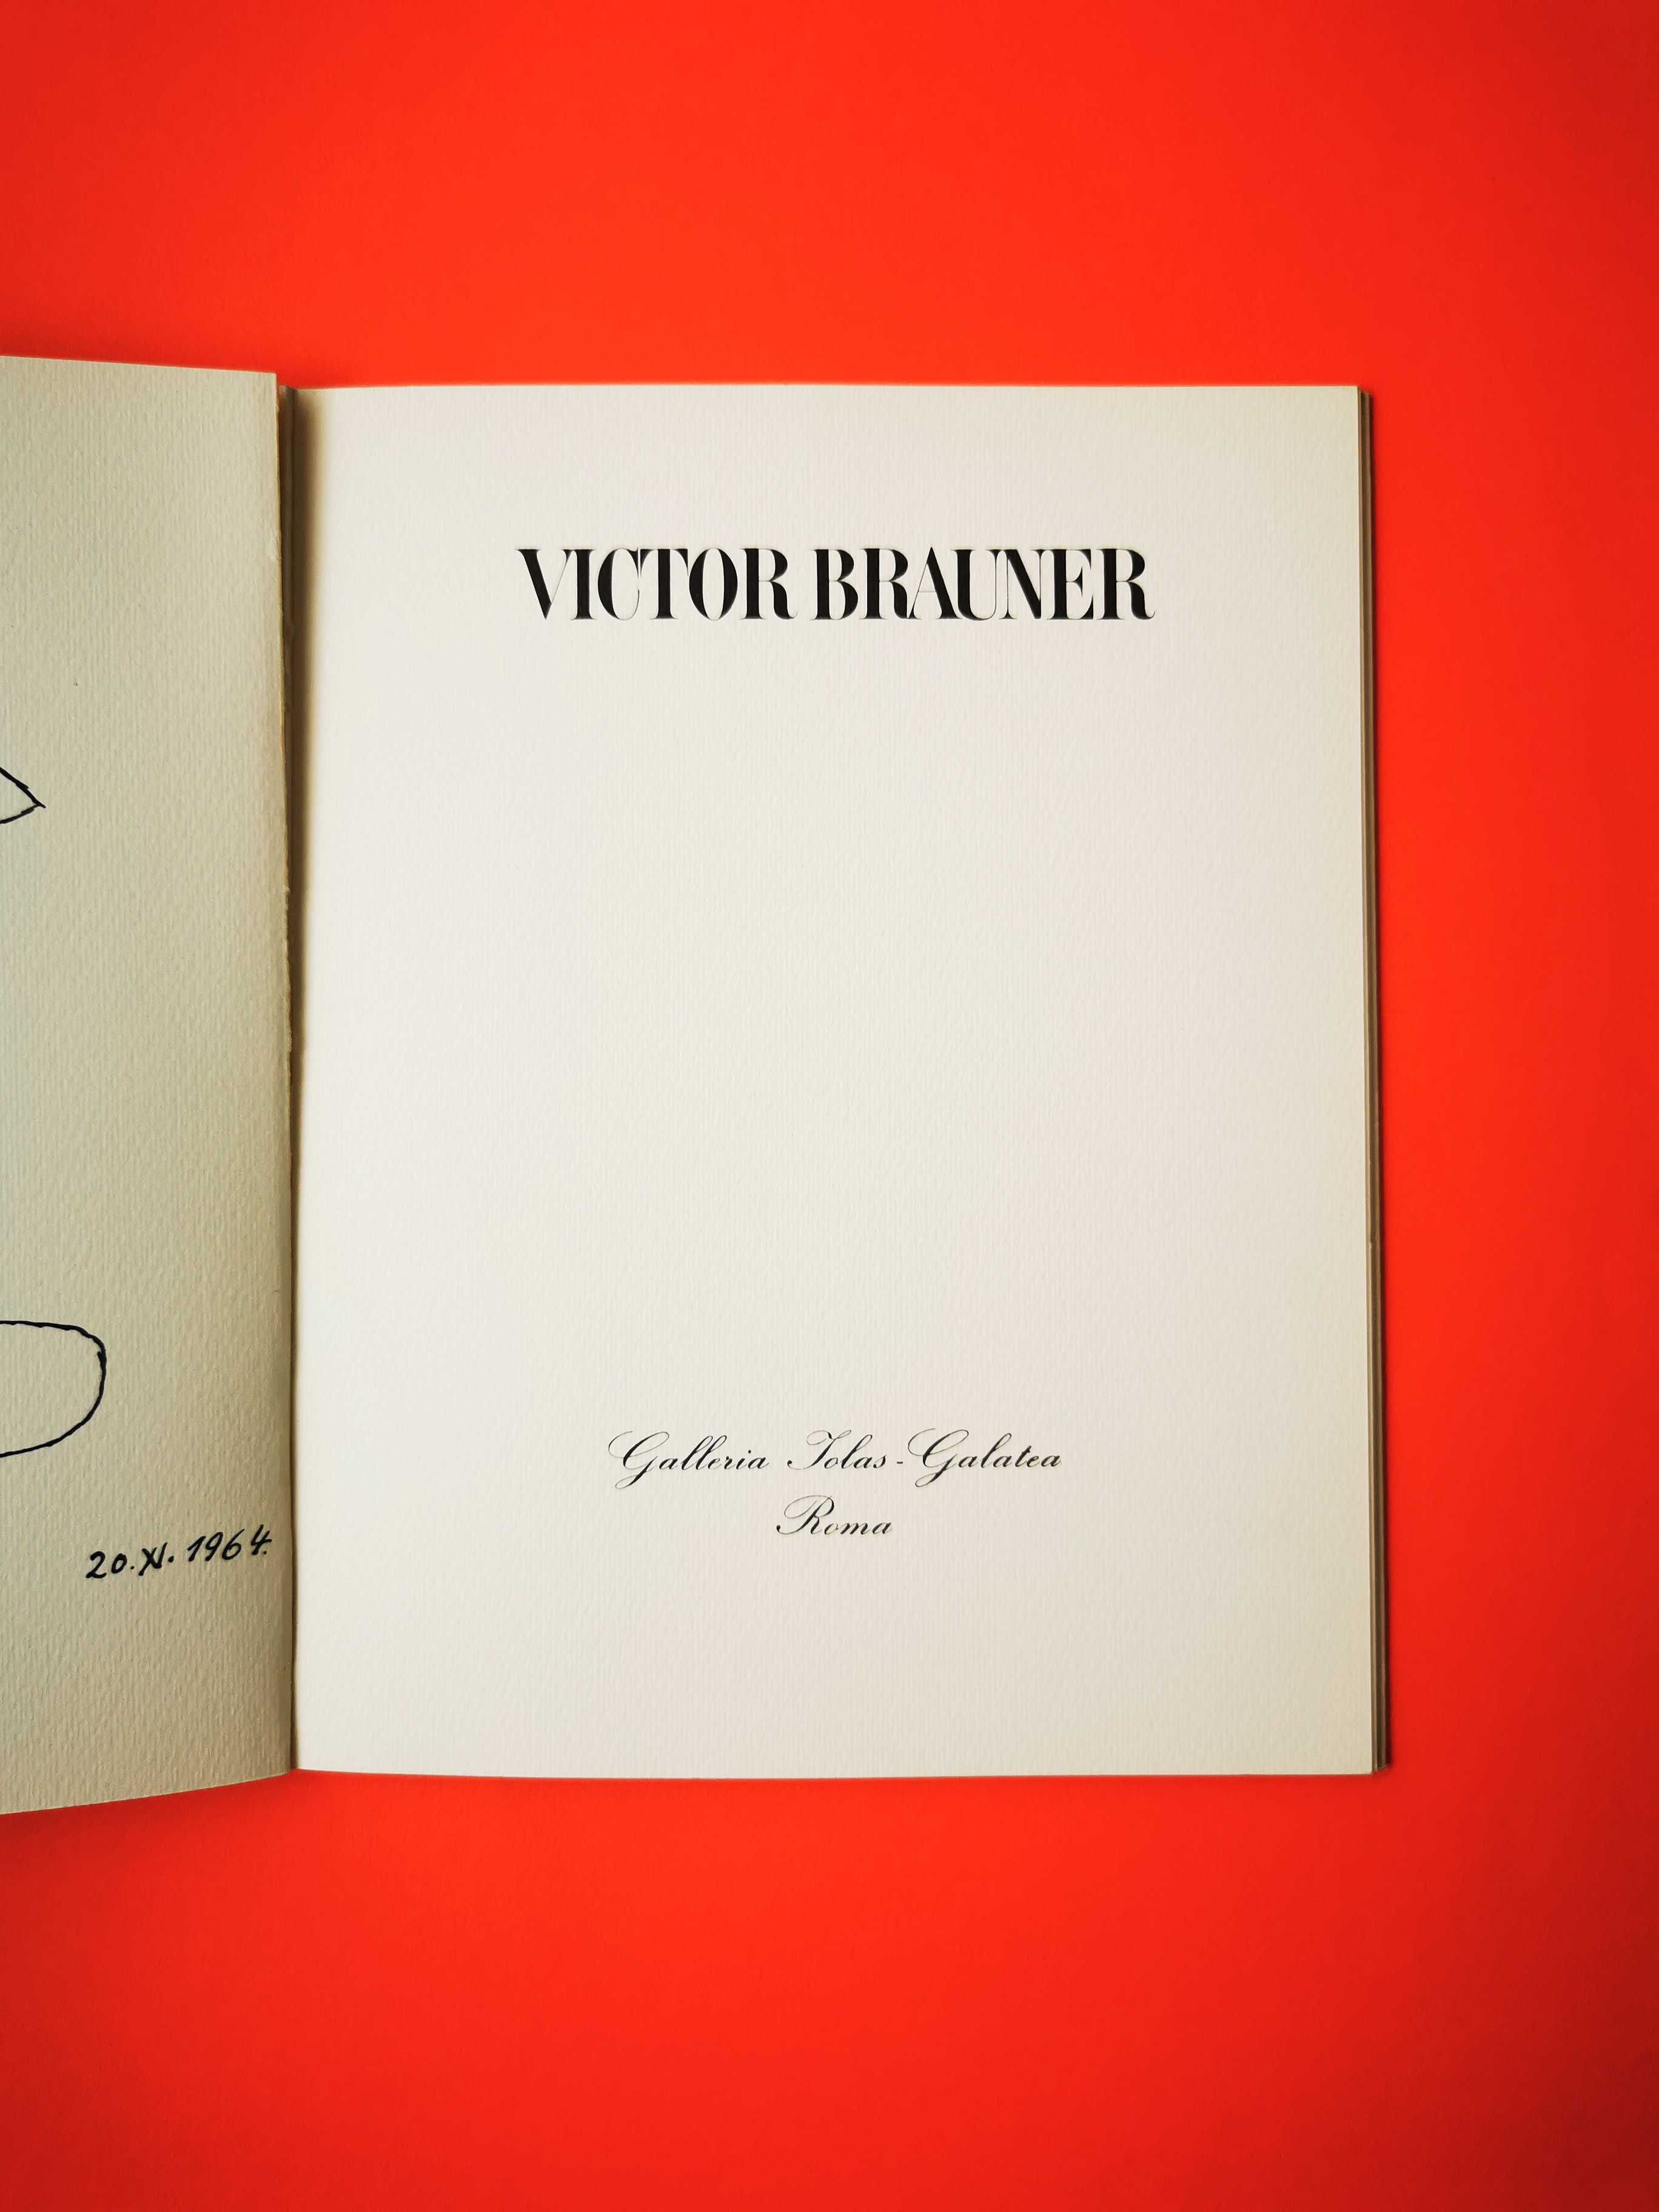 Victor Brauner carte album expozitie arta galeria Iolas-Galatea 1969